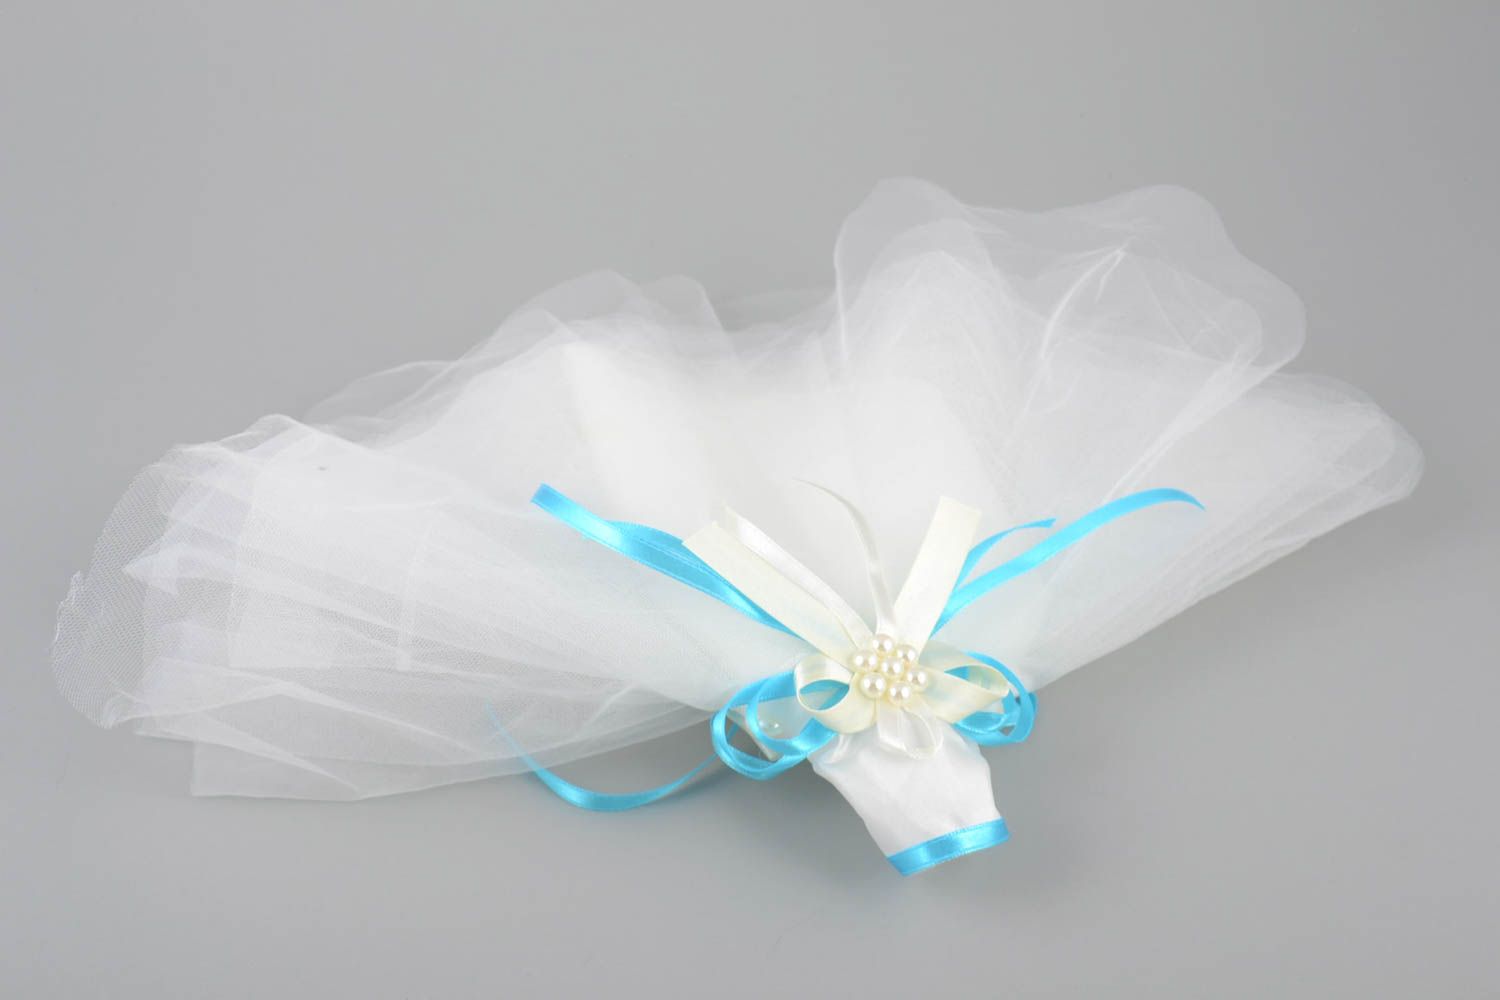 Одежда невесты на бутылку шампанского белая с голубым красивая ручной работы фото 2